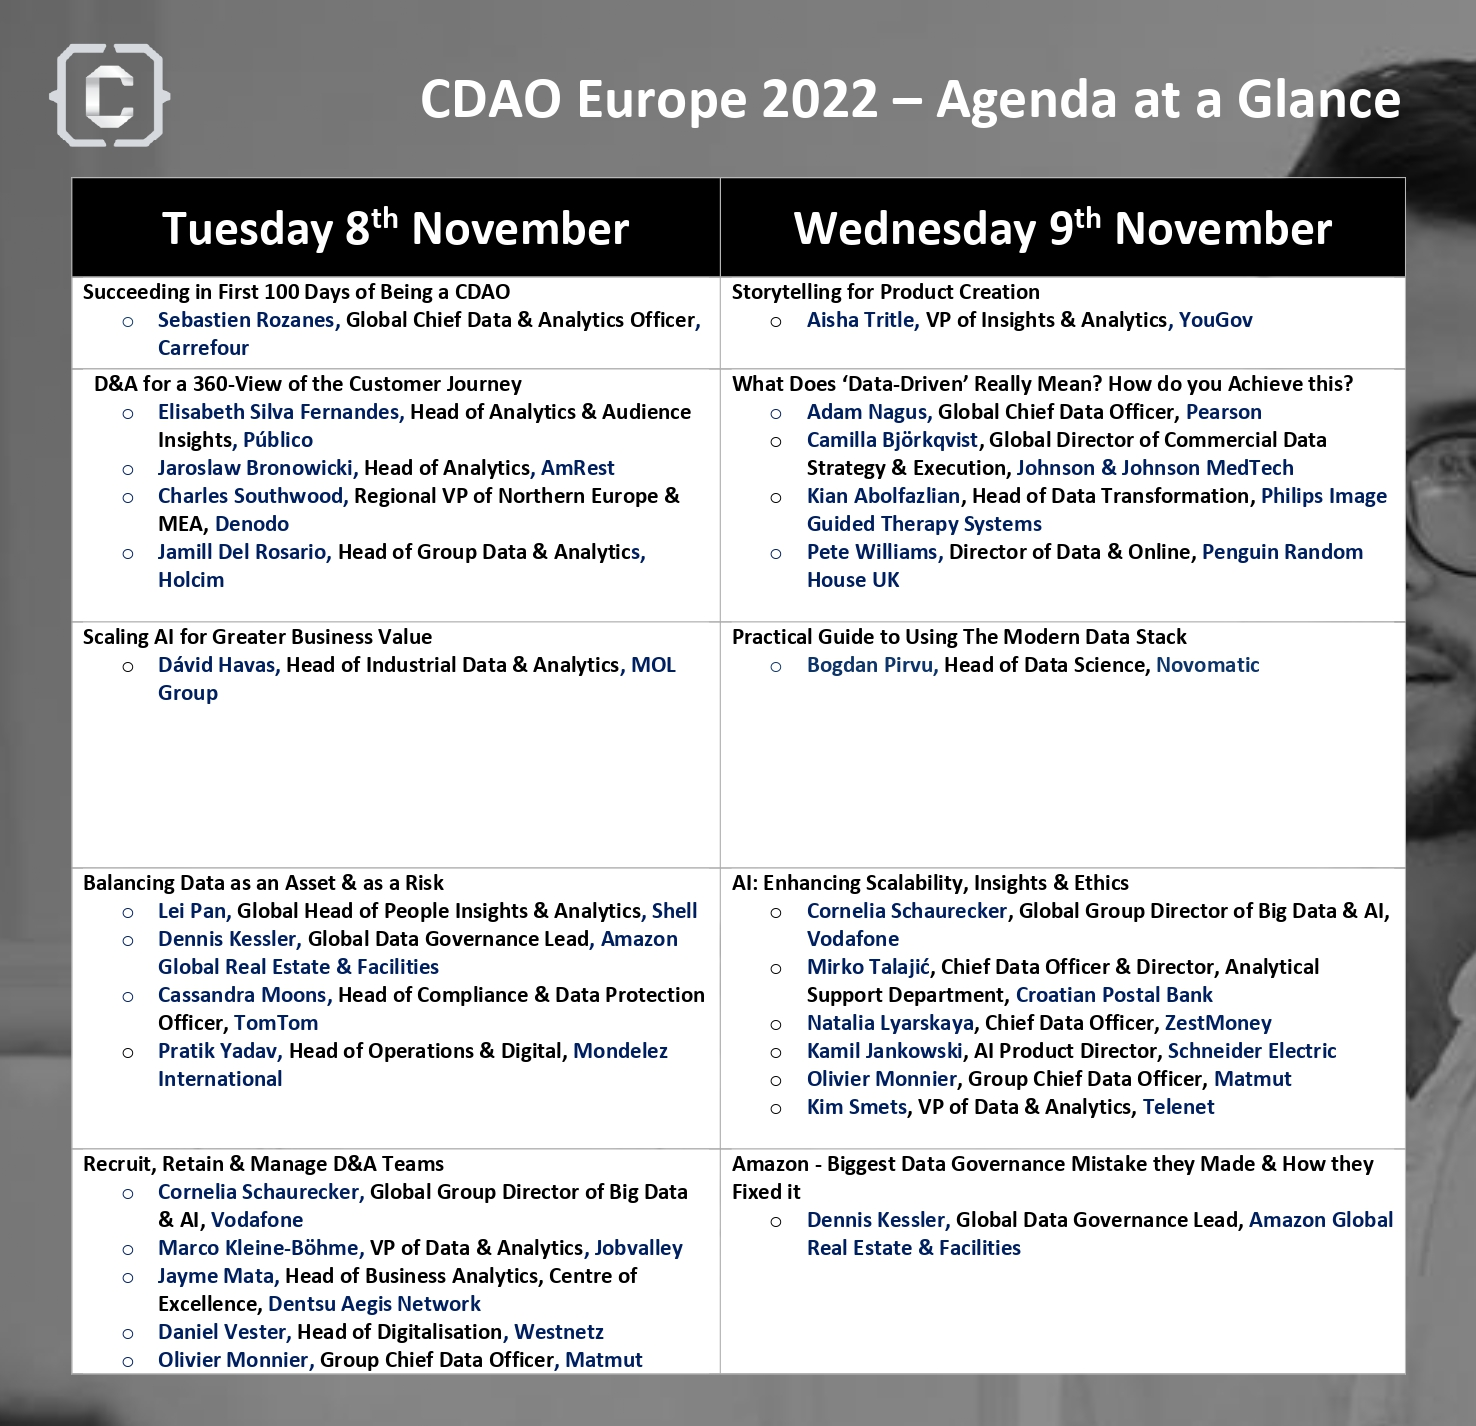 Agenda at a Glance - CDAO Europe 2